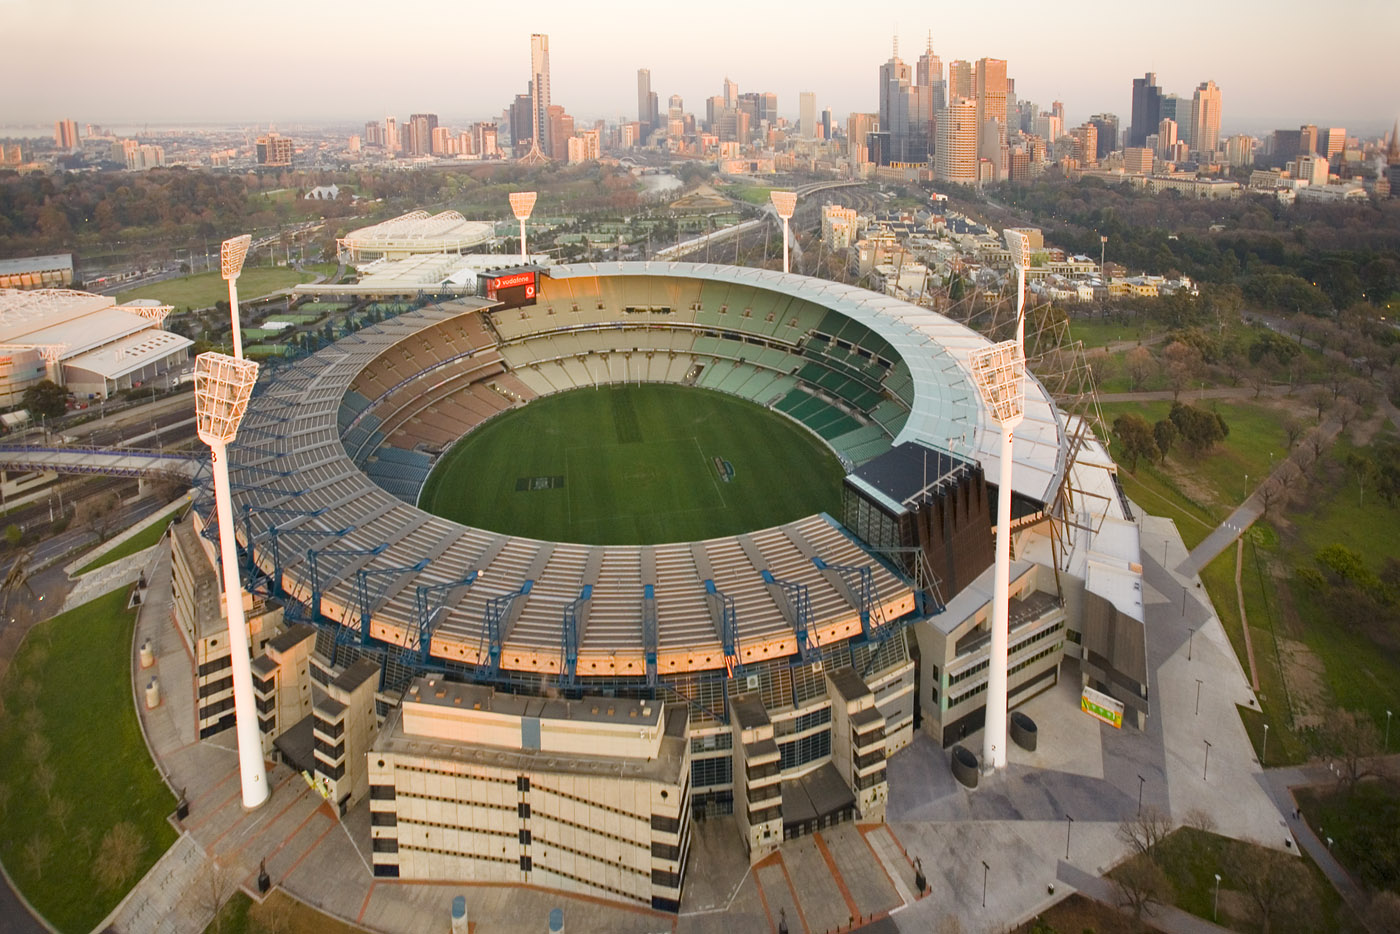 Крикет граунд. Мельбурн крикет Граунд. Стадион крикет Граунд. Мельбурн стадион футбольный. Мельбурн Австралия стадион.